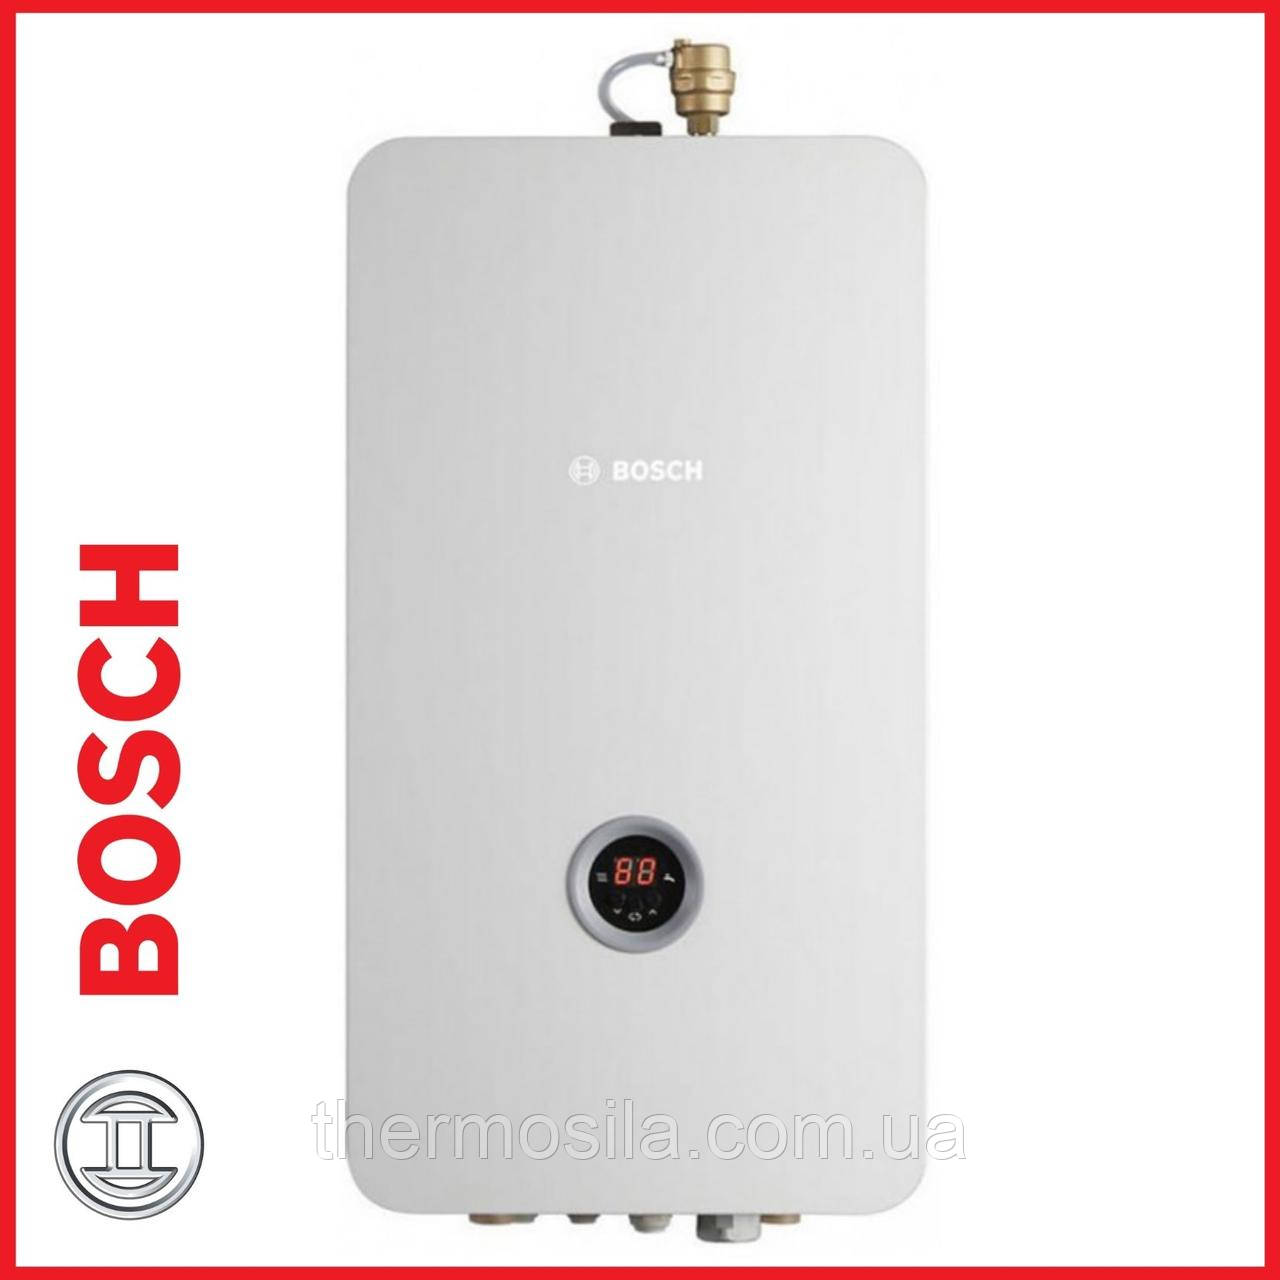 Электрический котел Bosch Tronic Heat 3500 6 UA ErP с расширительным  и циркуляционным насосом